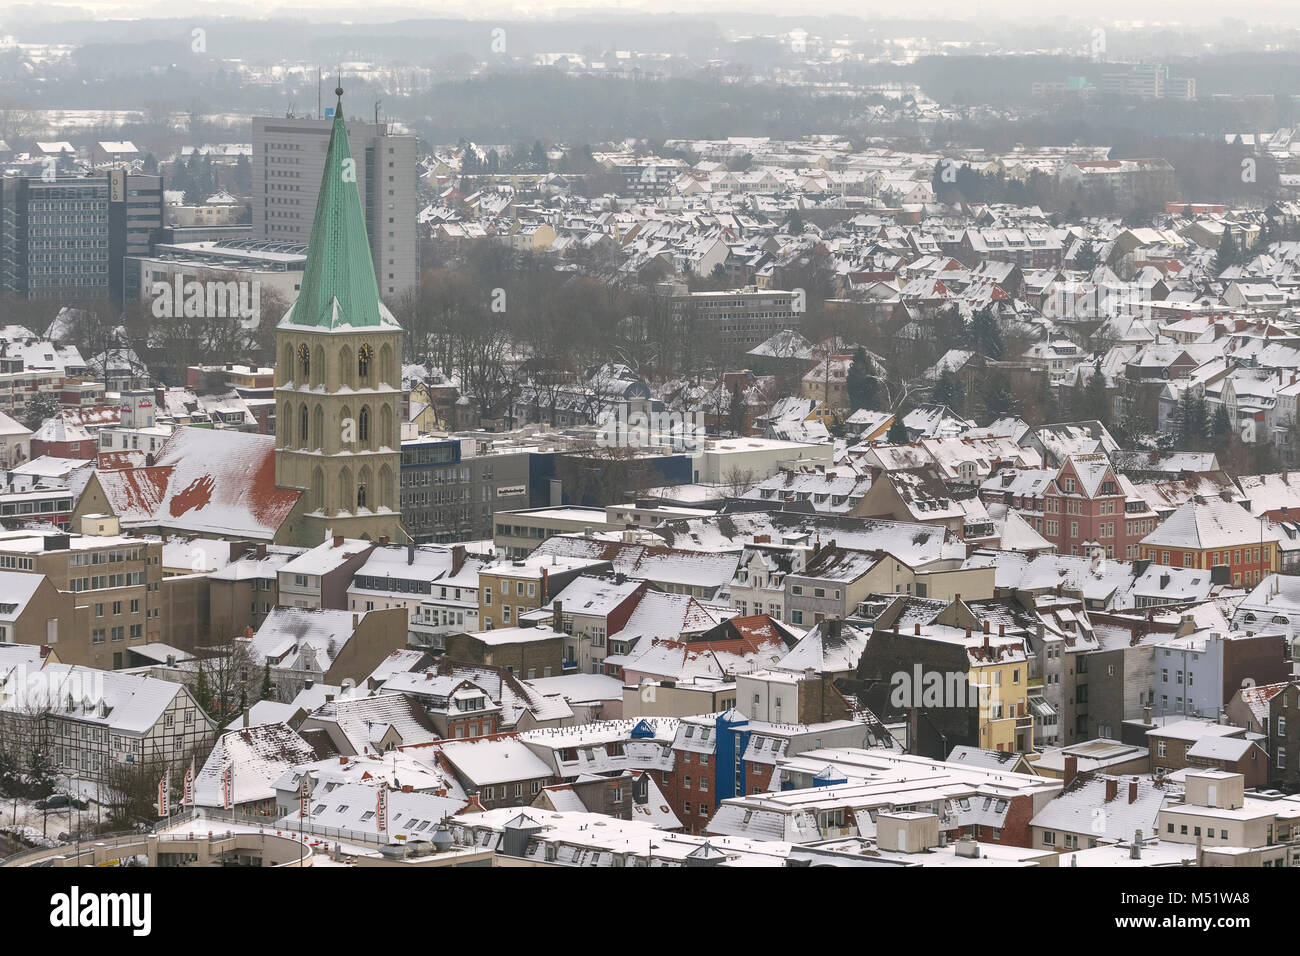 Vista aerea, martello tetti con la neve e il Paulus chiesa, Hamm, la zona della Ruhr, Renania settentrionale-Vestfalia, Germania, Europa, Hamm, la zona della Ruhr, Nord Rhine-West Foto Stock